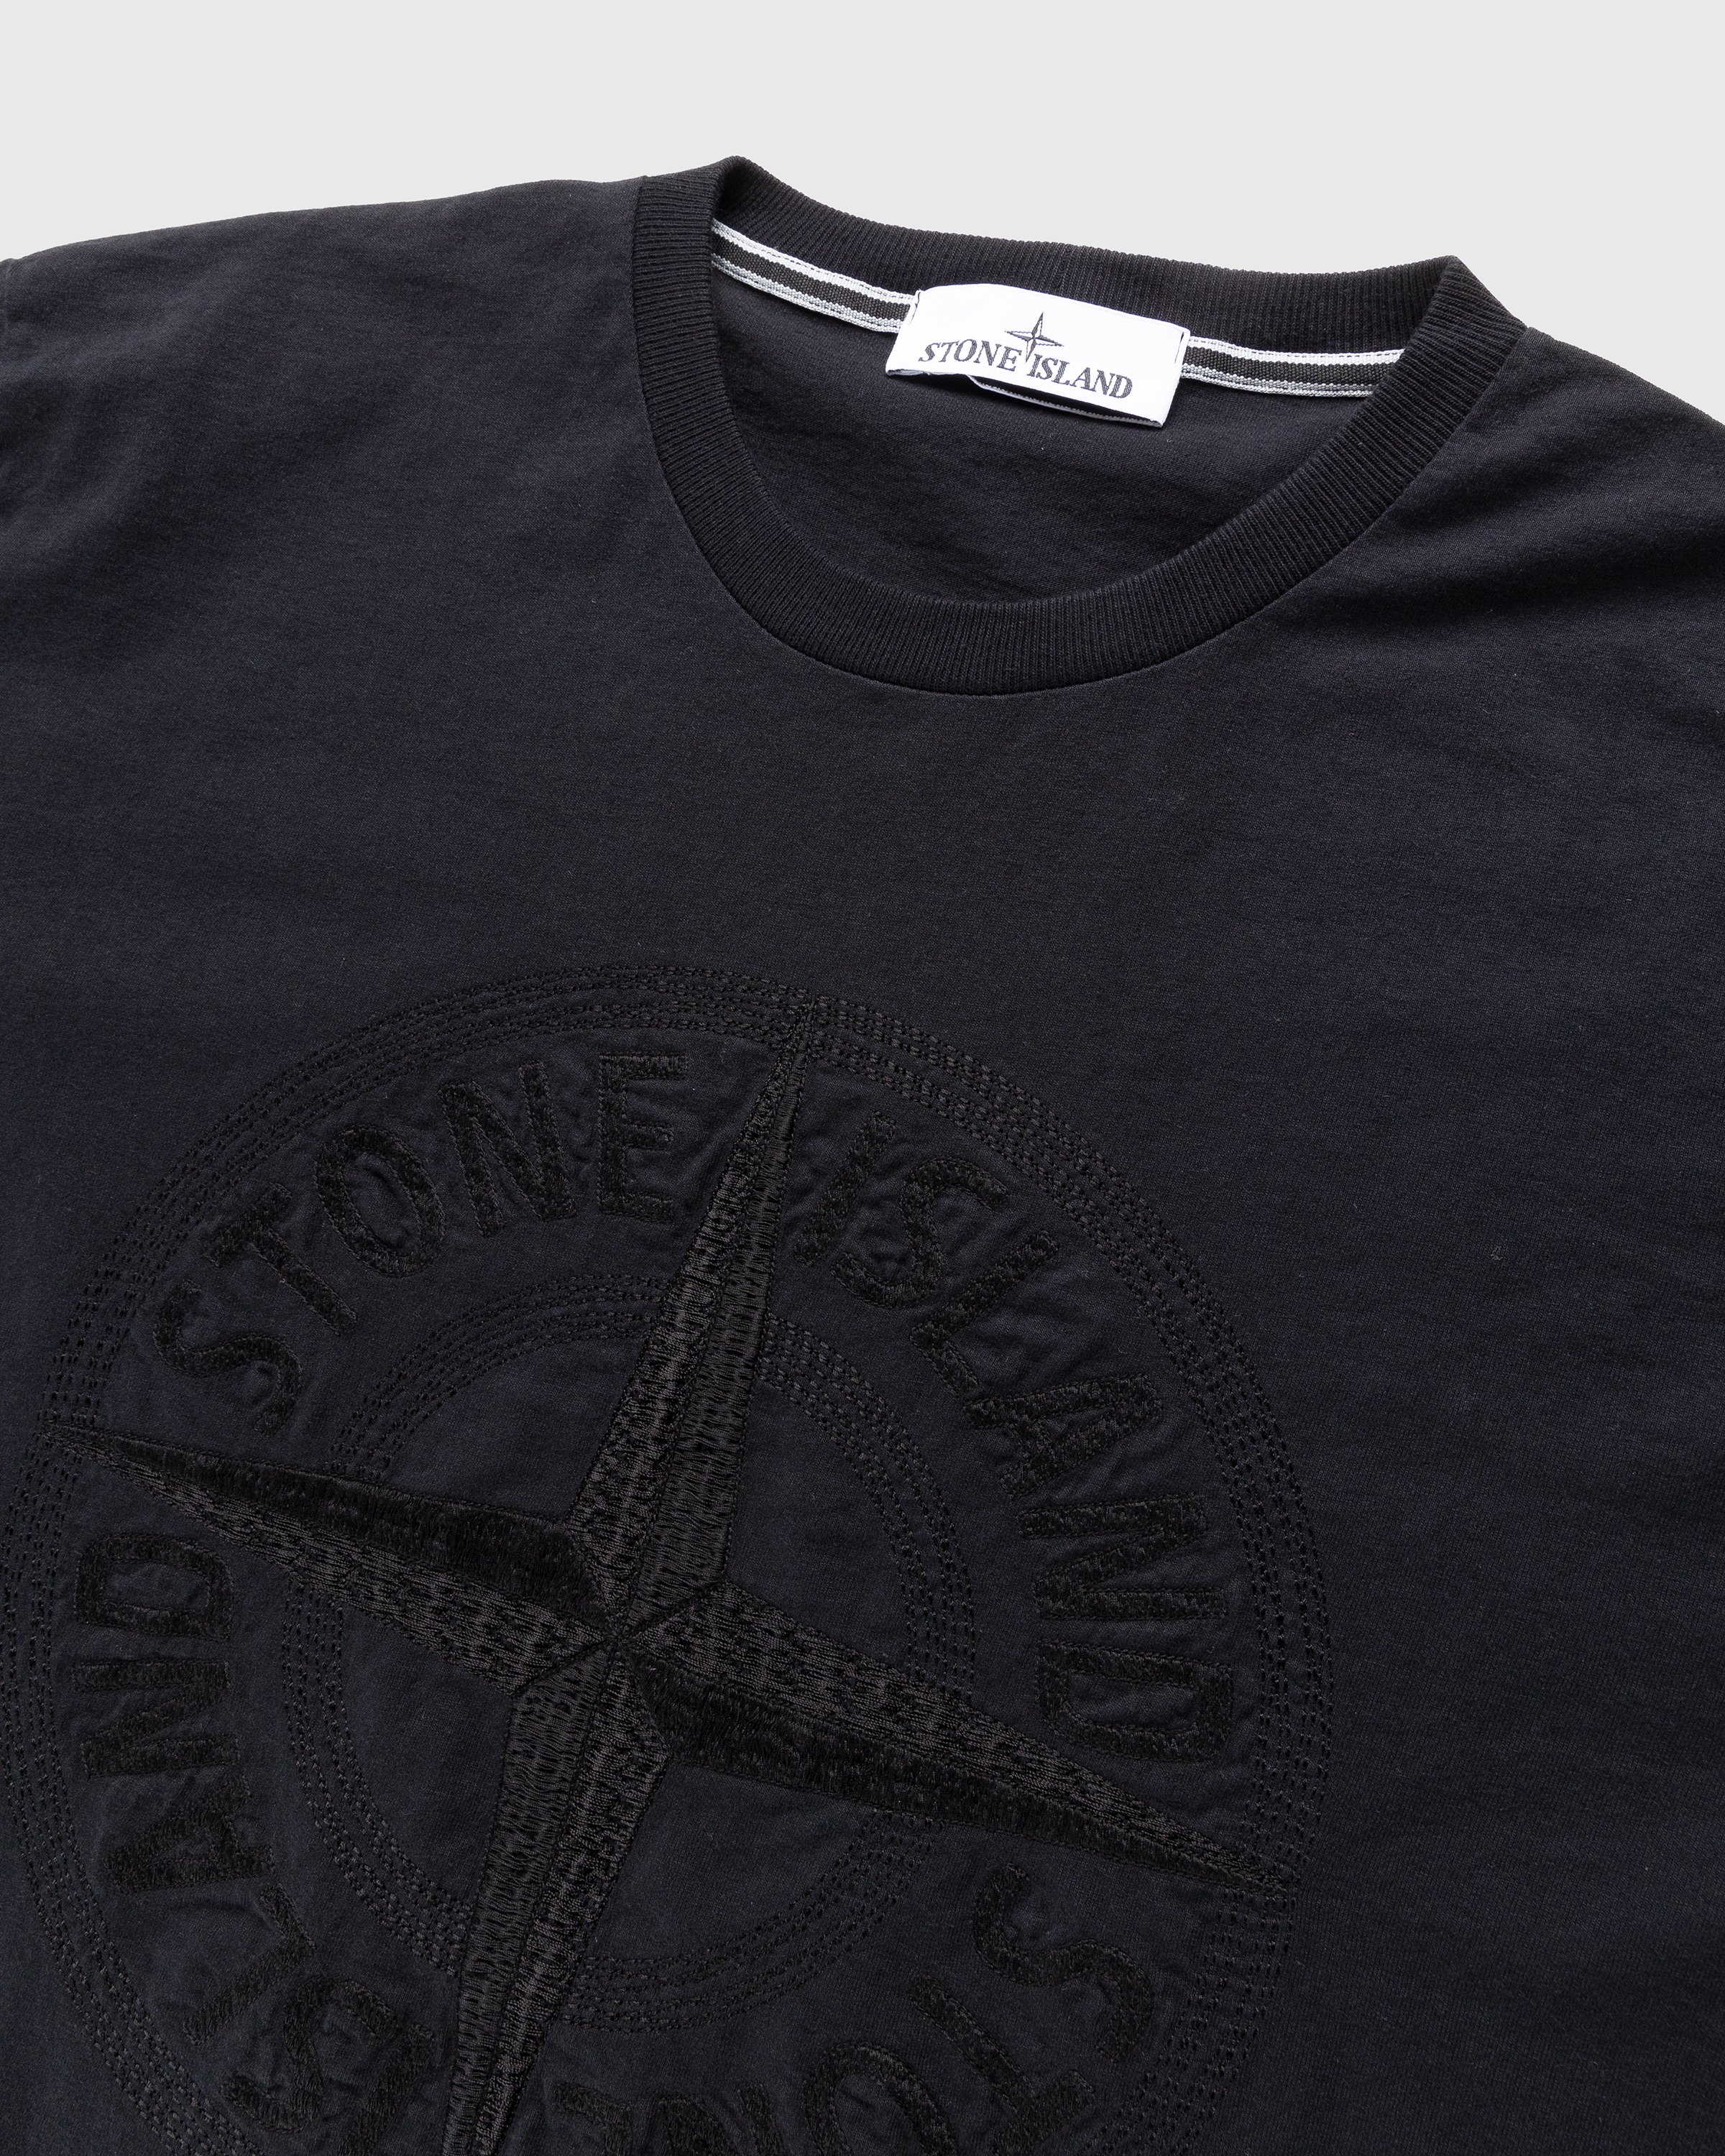 Stone Island - Compass Logo T-Shirt Black - Clothing - Black - Image 4